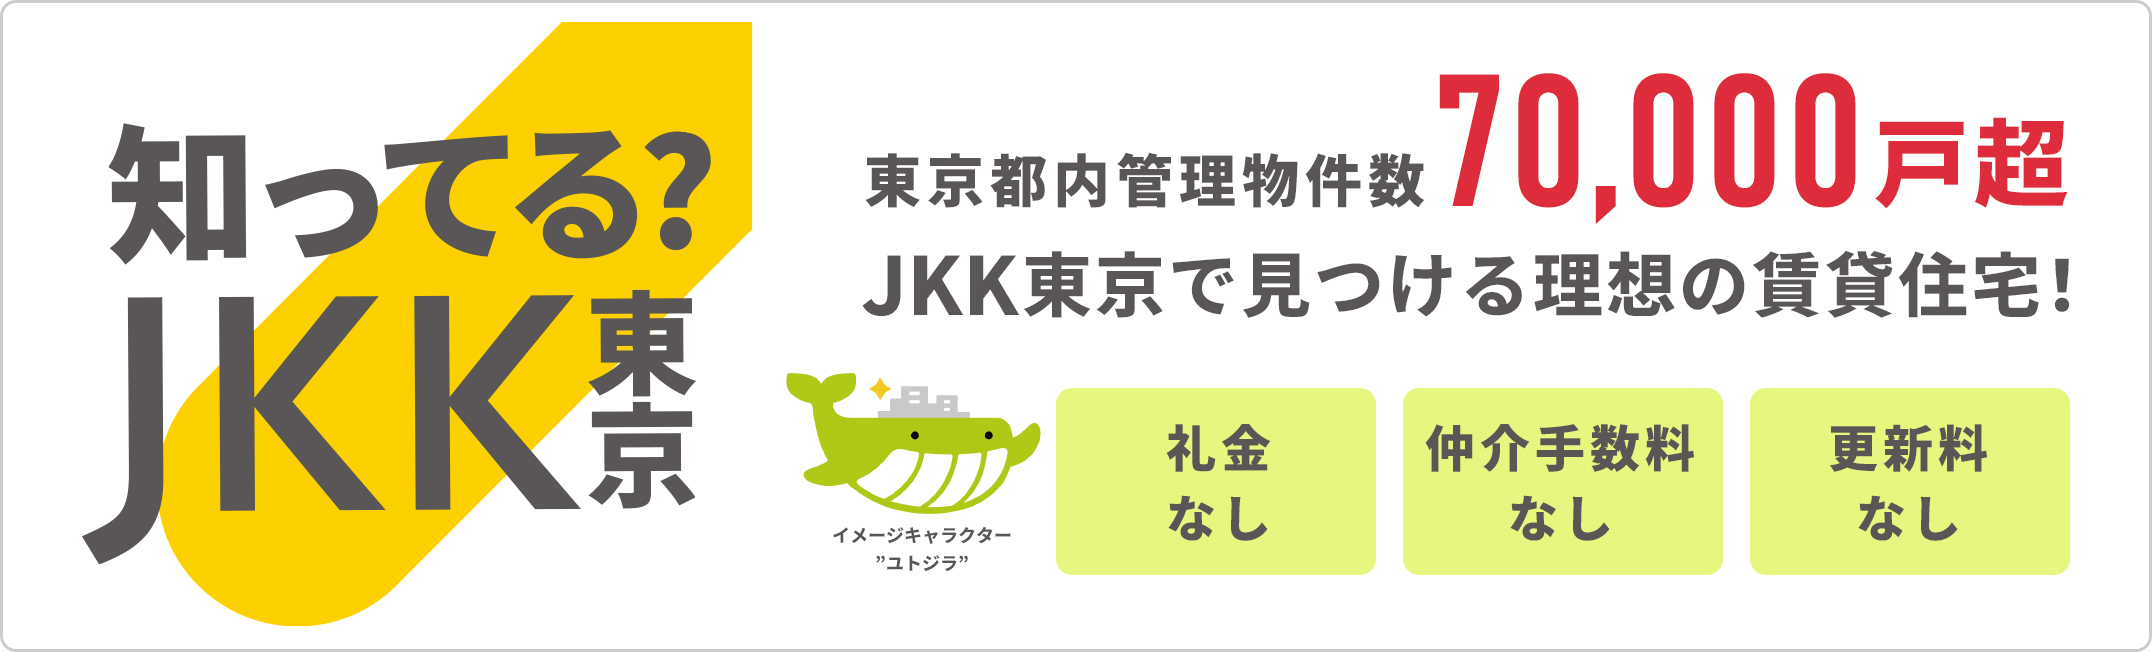 知ってるJKK東京、礼金なし、仲介手数料なし、更新料なし、東京都内管理物件7万戸超、JKK東京で見つける理想の賃貸住宅